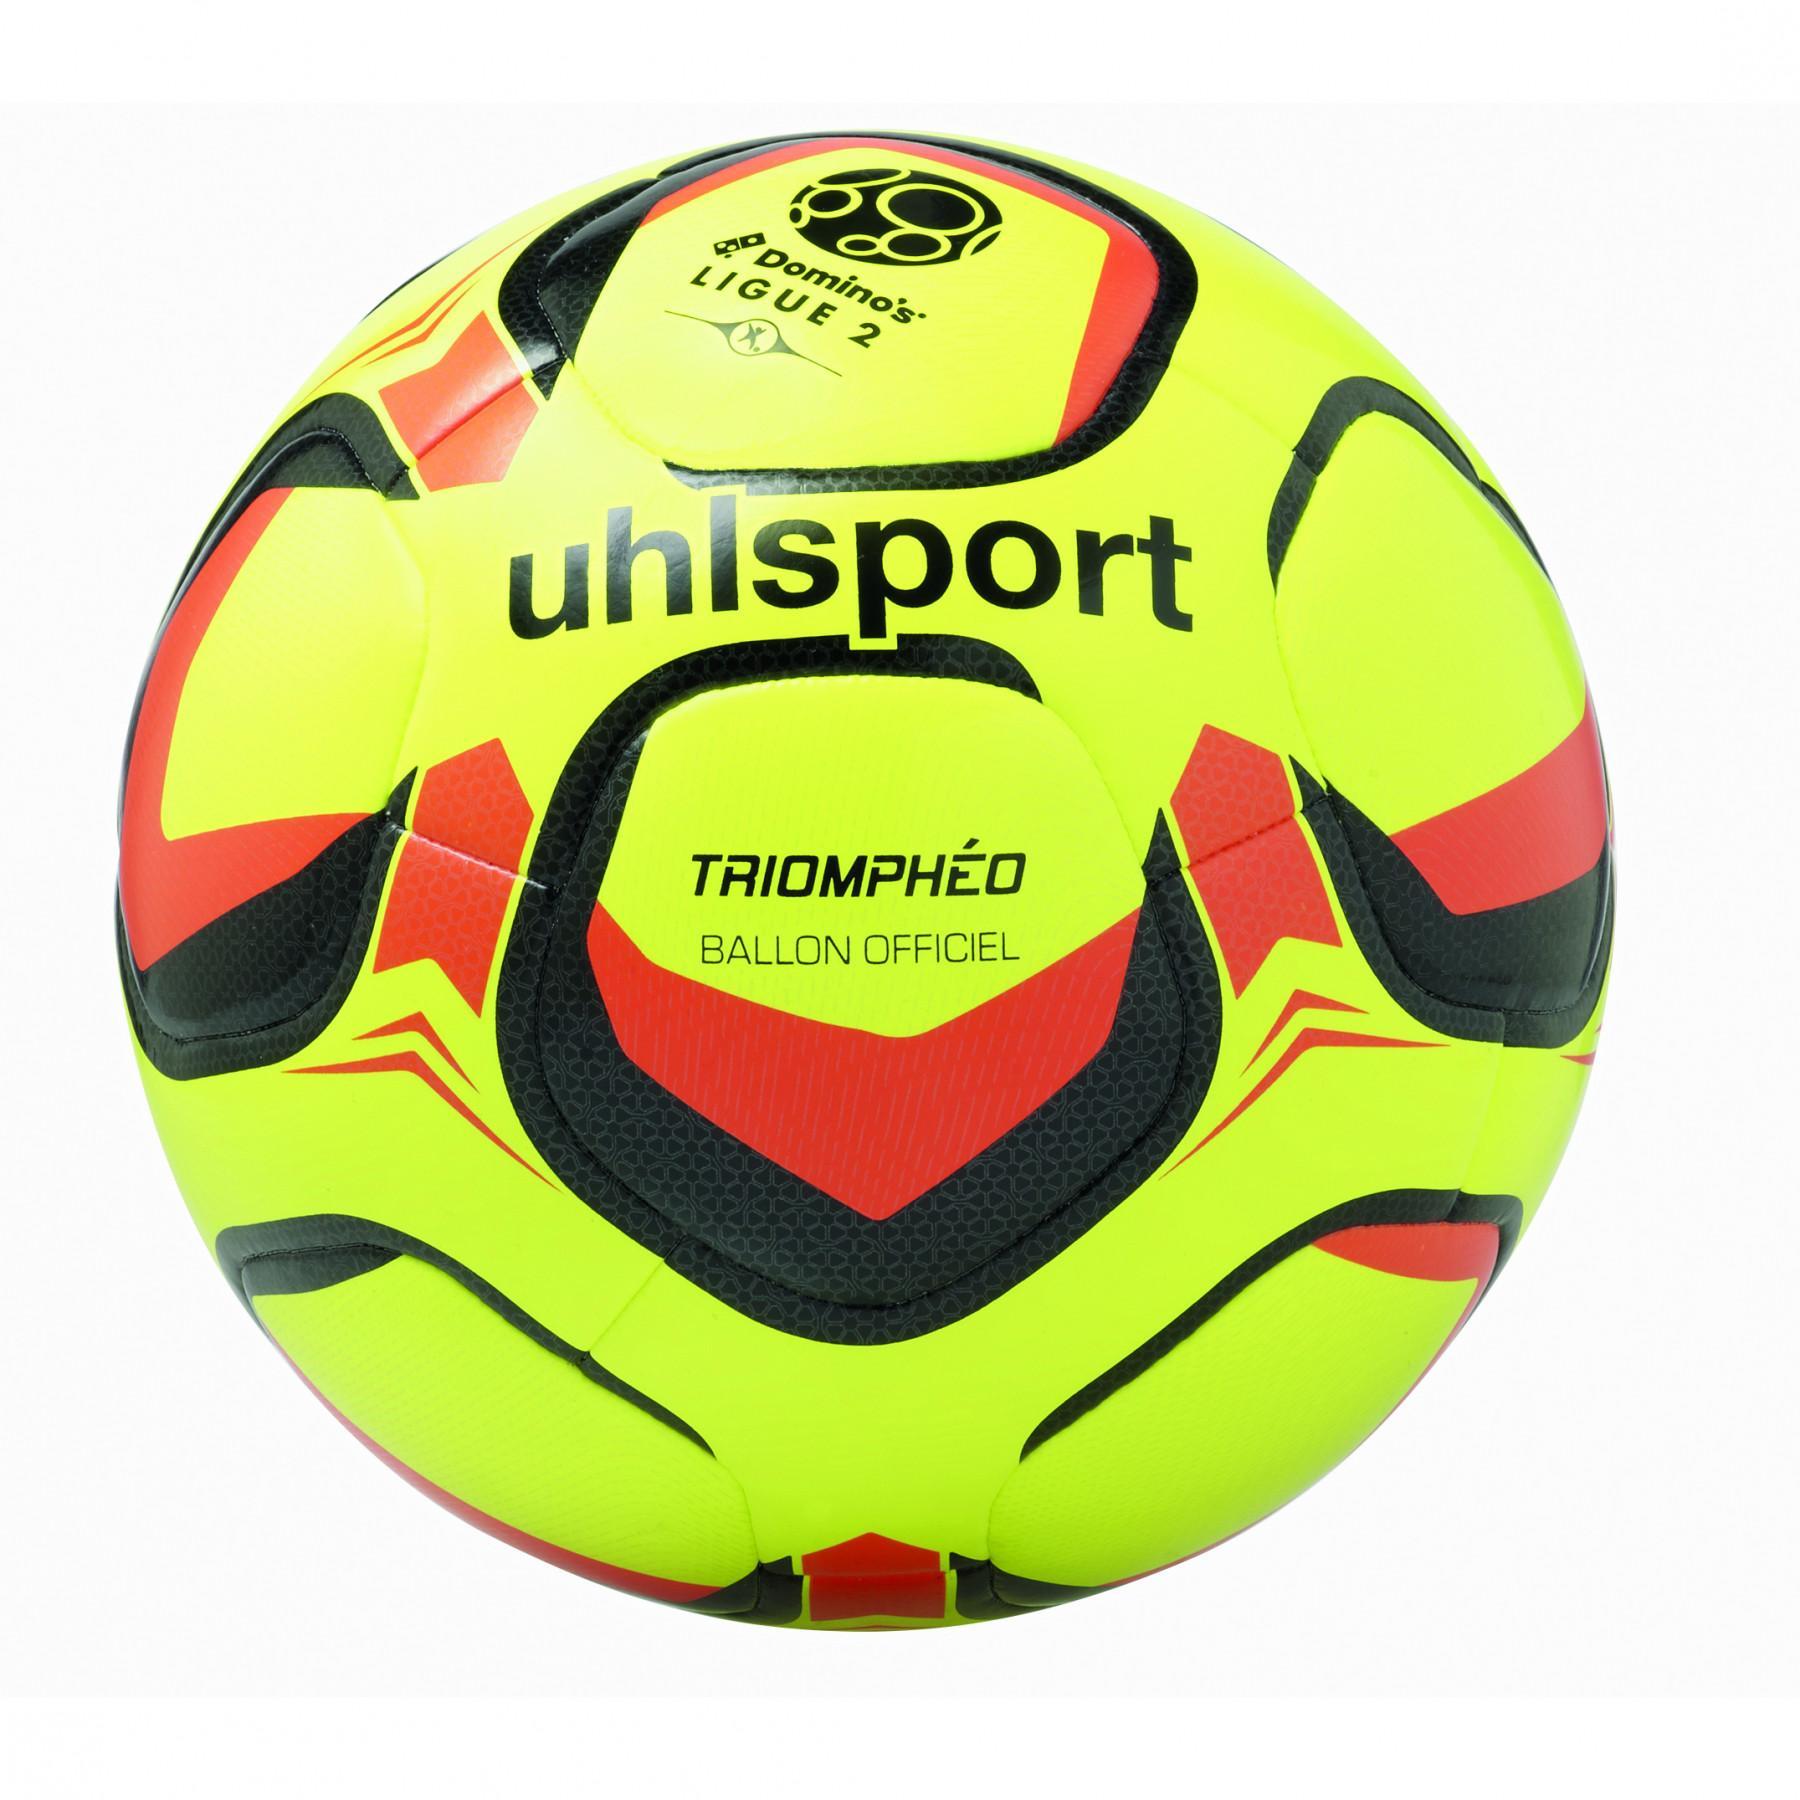 Officiële bal Ligue 2 Uhlsport Triomphéo